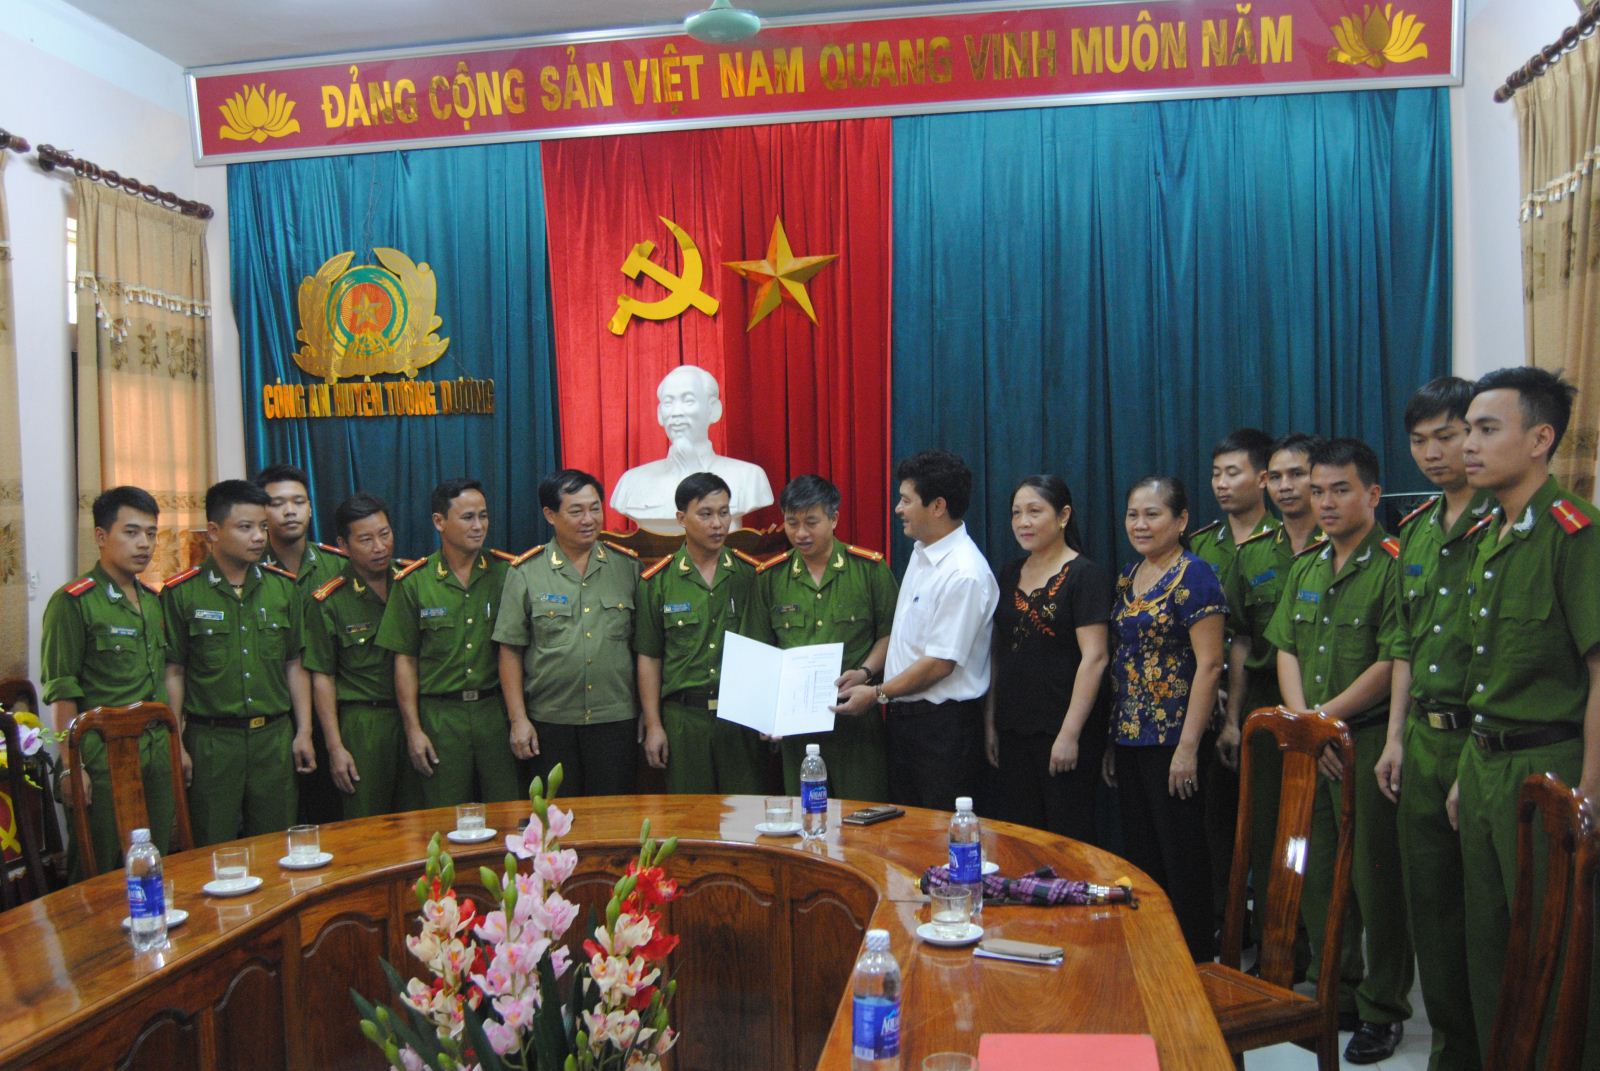 Ông Phạm Trọng Hoàng thay mặt cho huyện ủy ỦY ban nhân dân huyện thưởng nóng cho ban chuyên án 3 triệu đồng